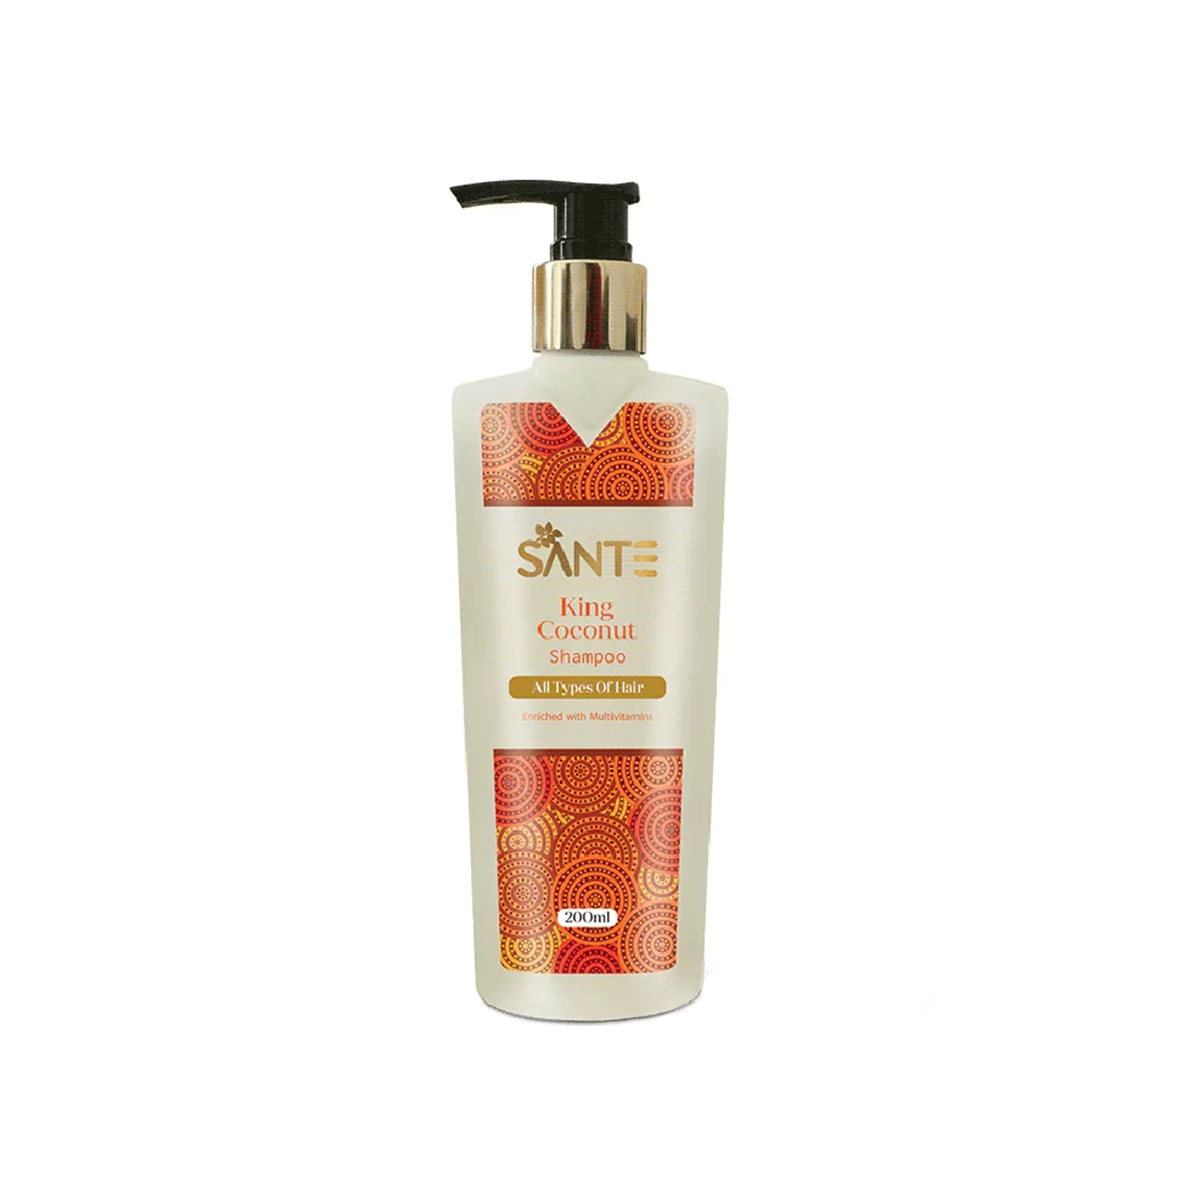 Sante King Coconut Shampoo 200ml